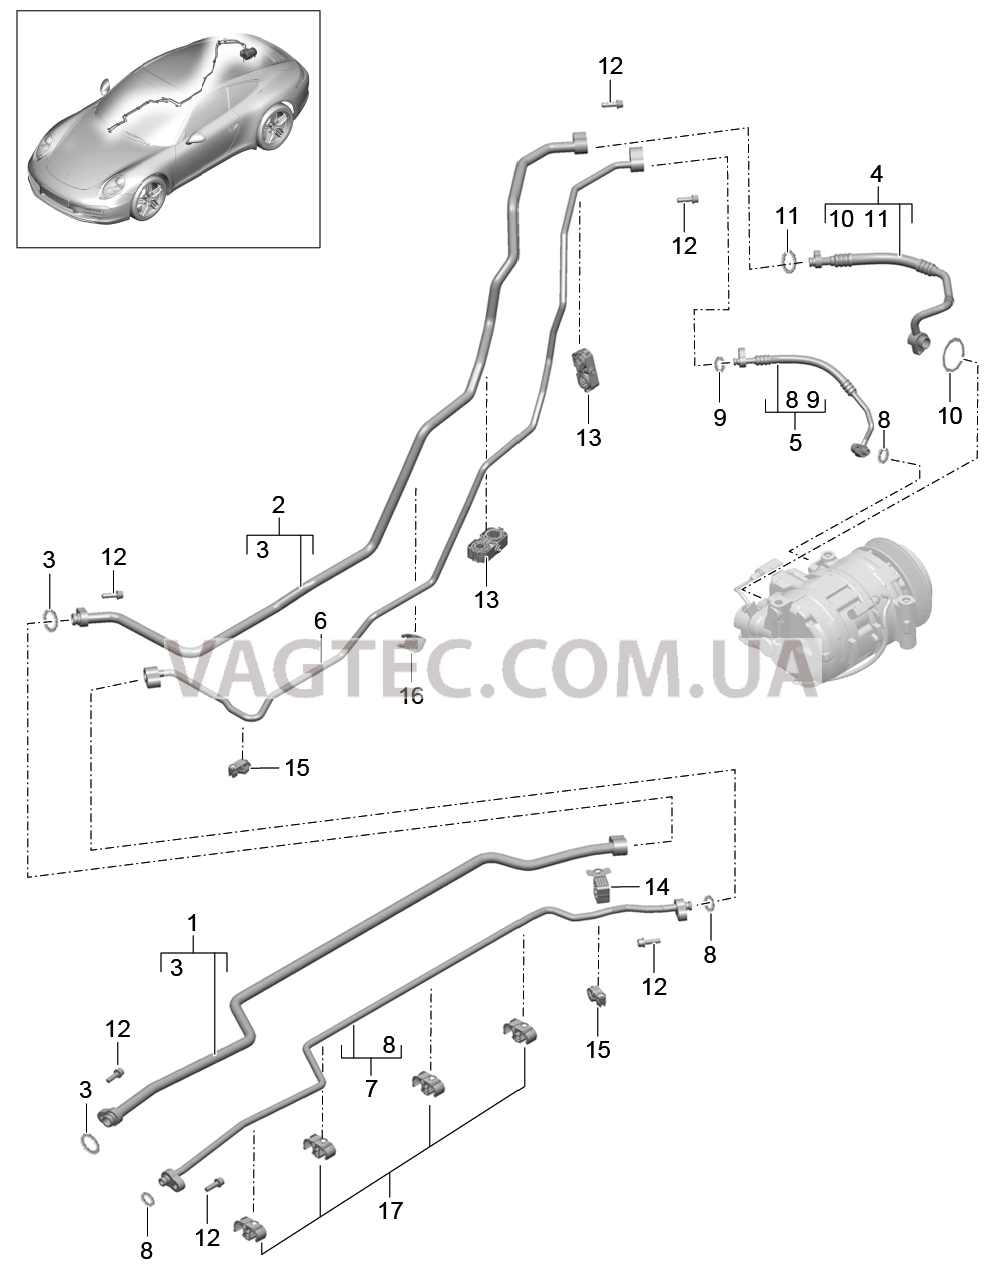 813-025 Циркуляция охлаждающей жидкости, Днище кузова, и, Задняя подвеска для PORSCHE 911.Carrera 2012-2016